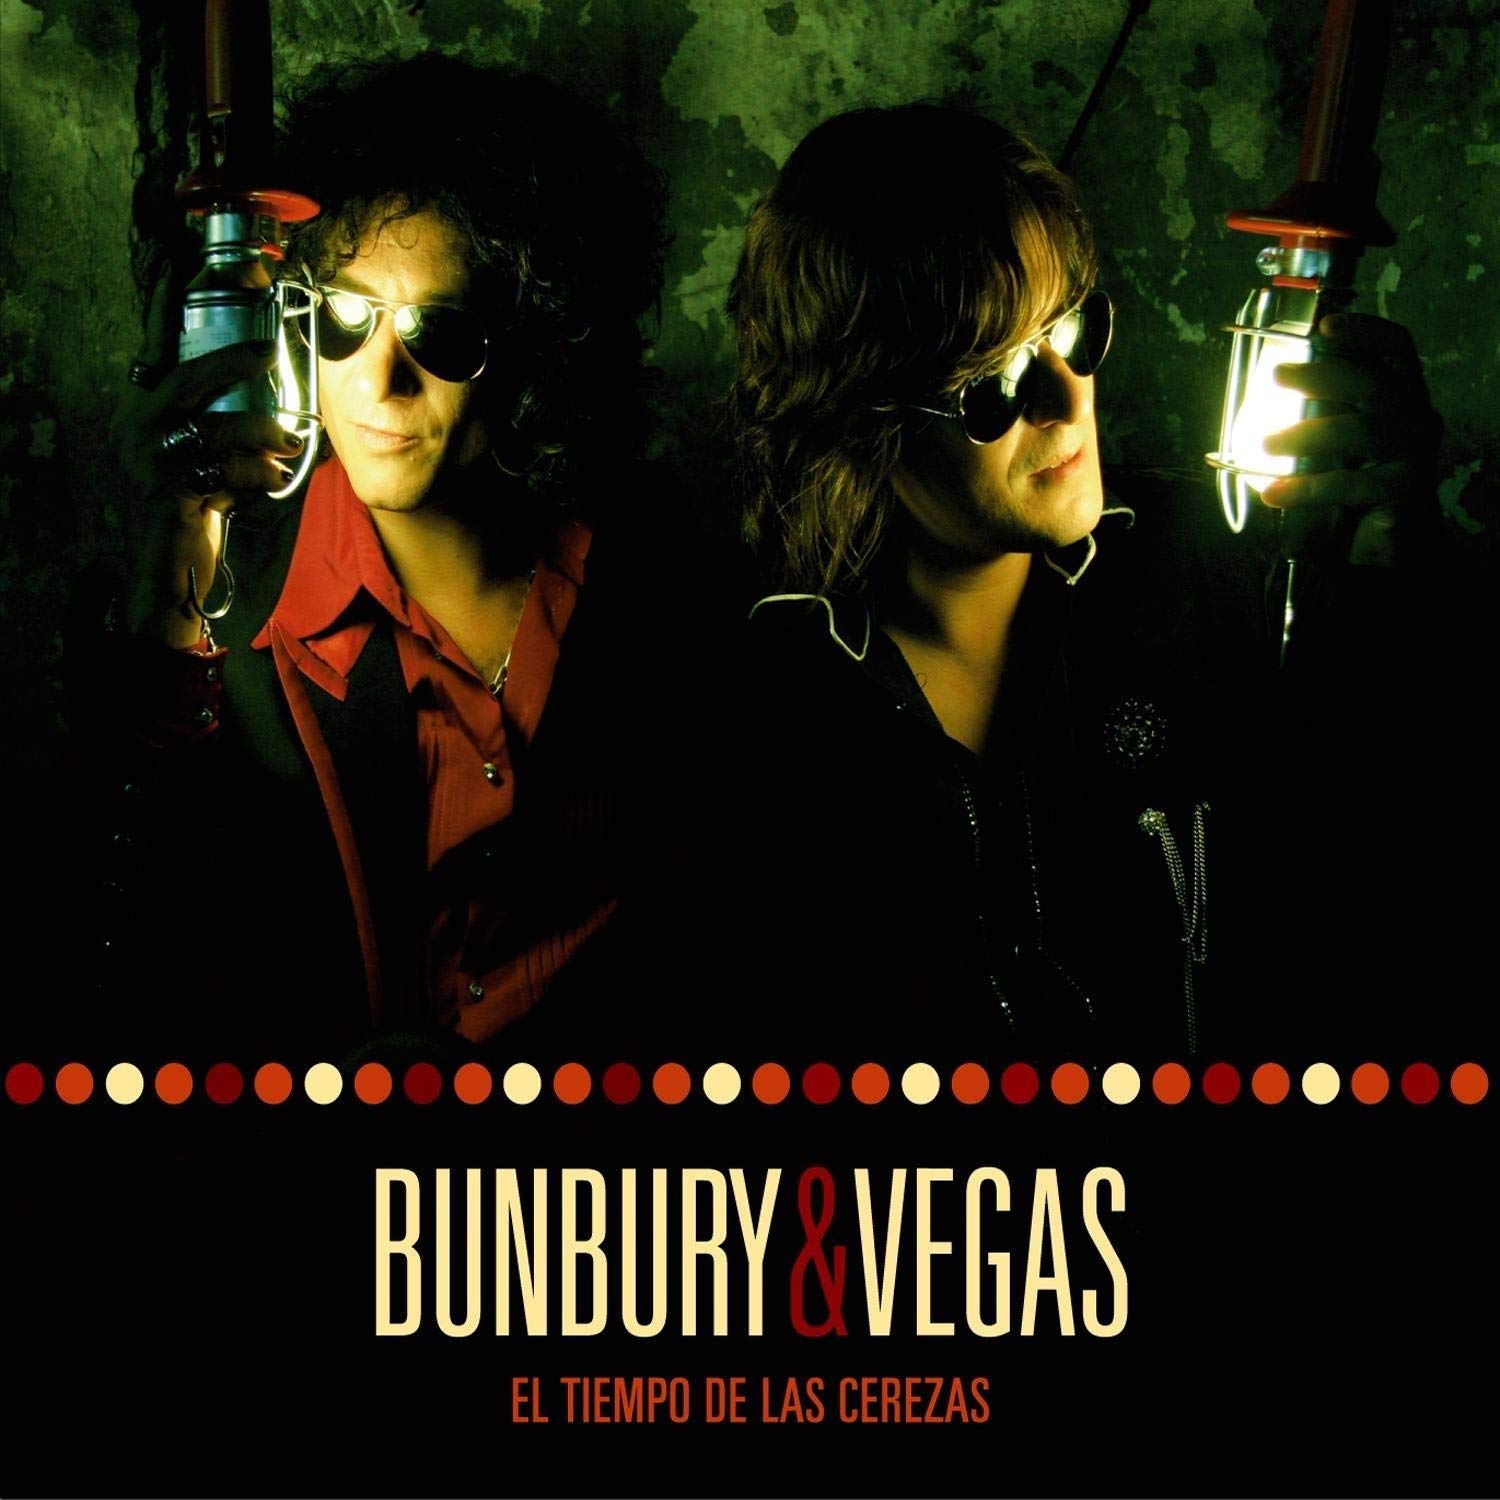 Bunbury & Vegas "El Tiempo de las Cerezas" 2LP